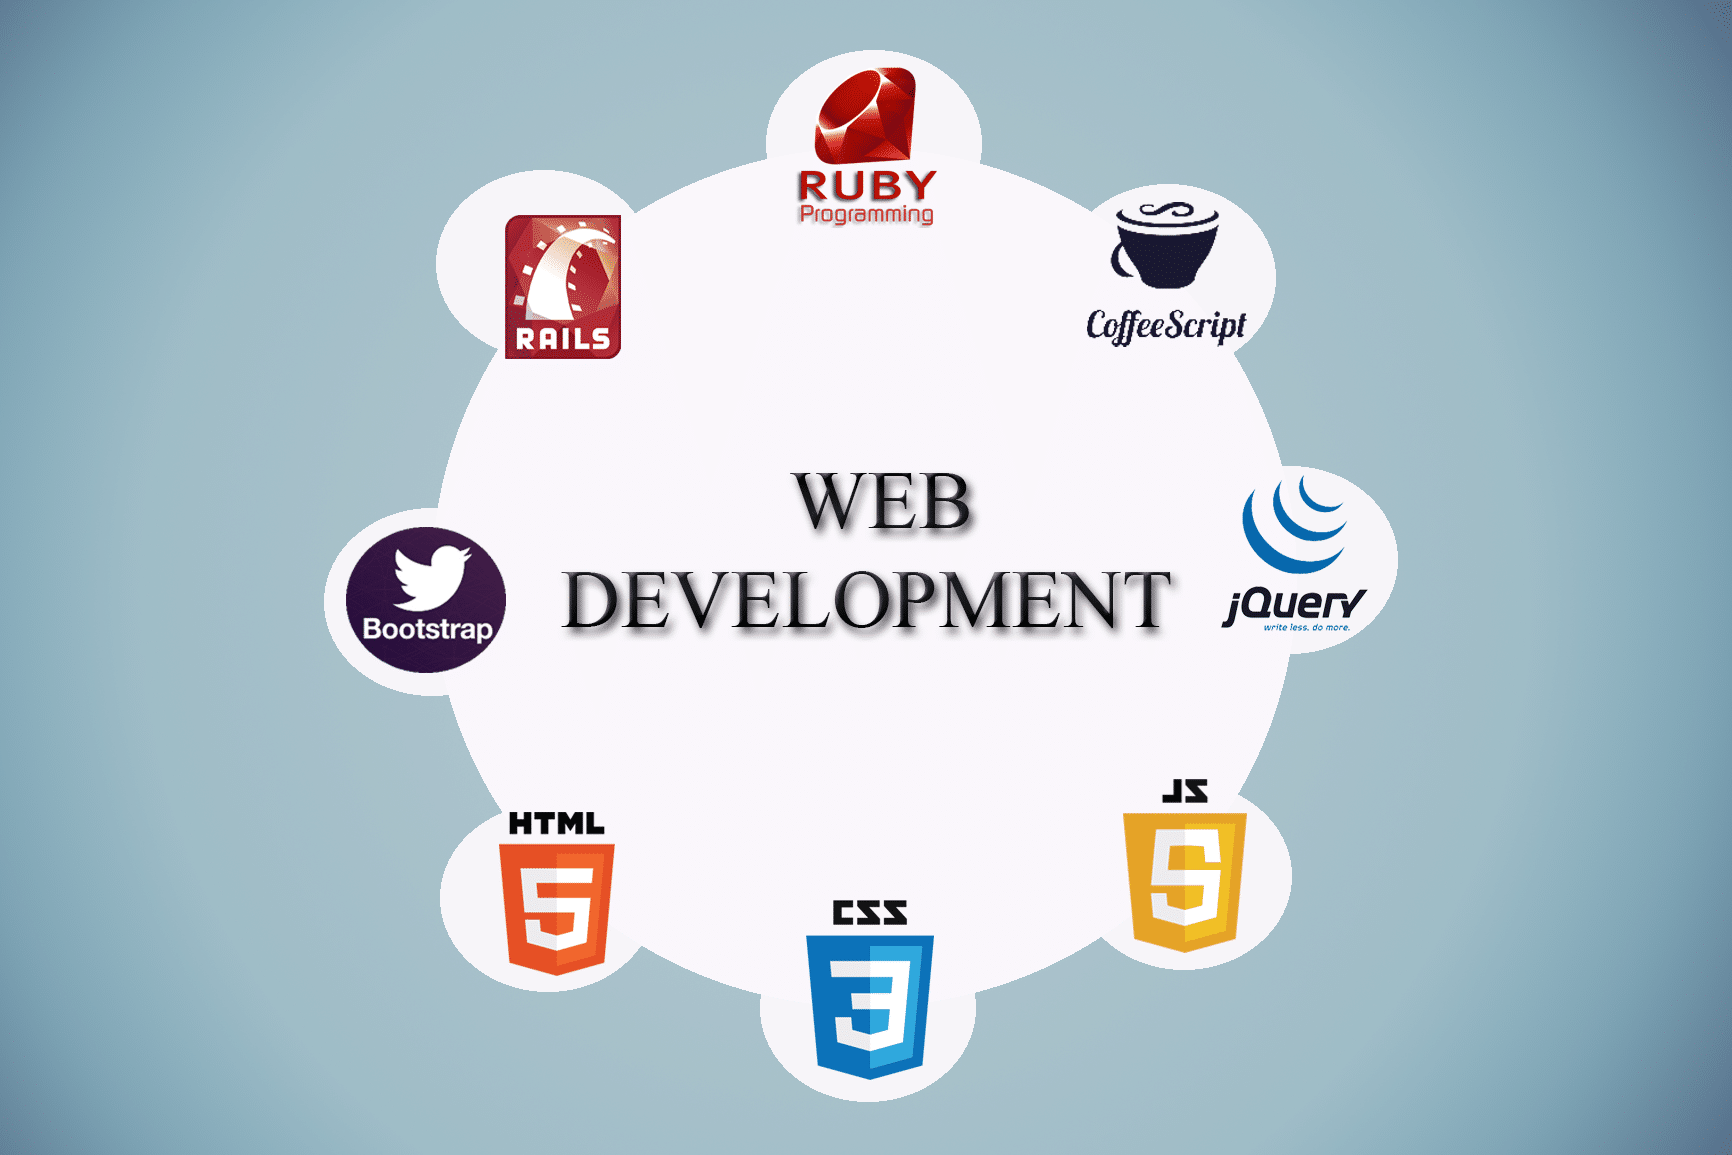 Web Development Activities